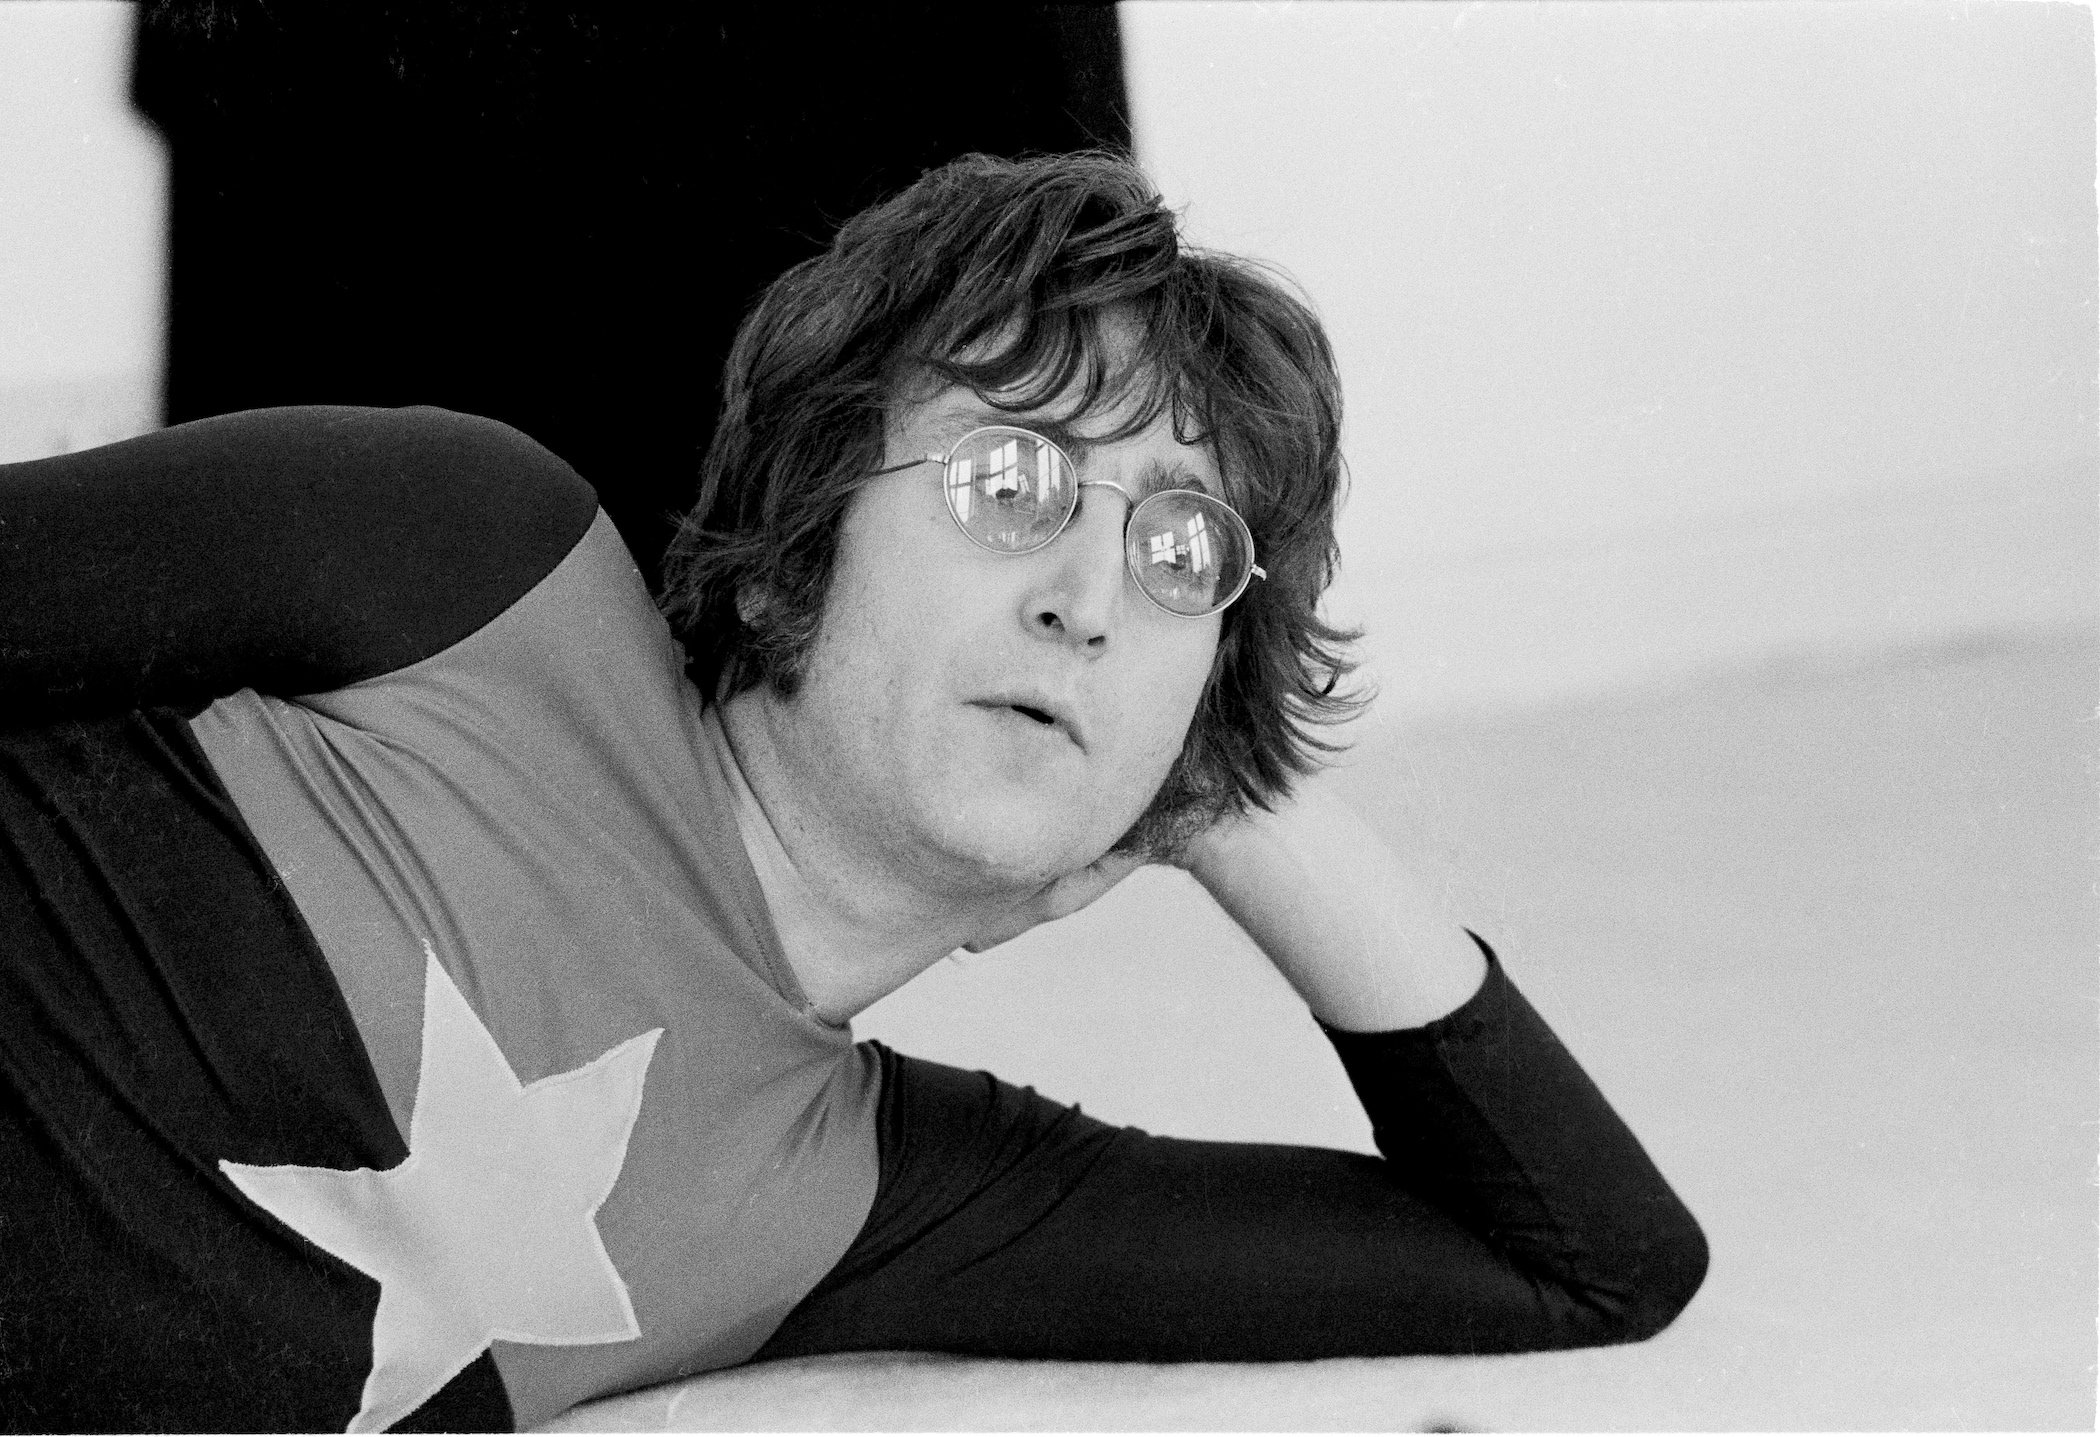 Sean Lennon’s Statement on John’s Death, According to Cynthia Lennon